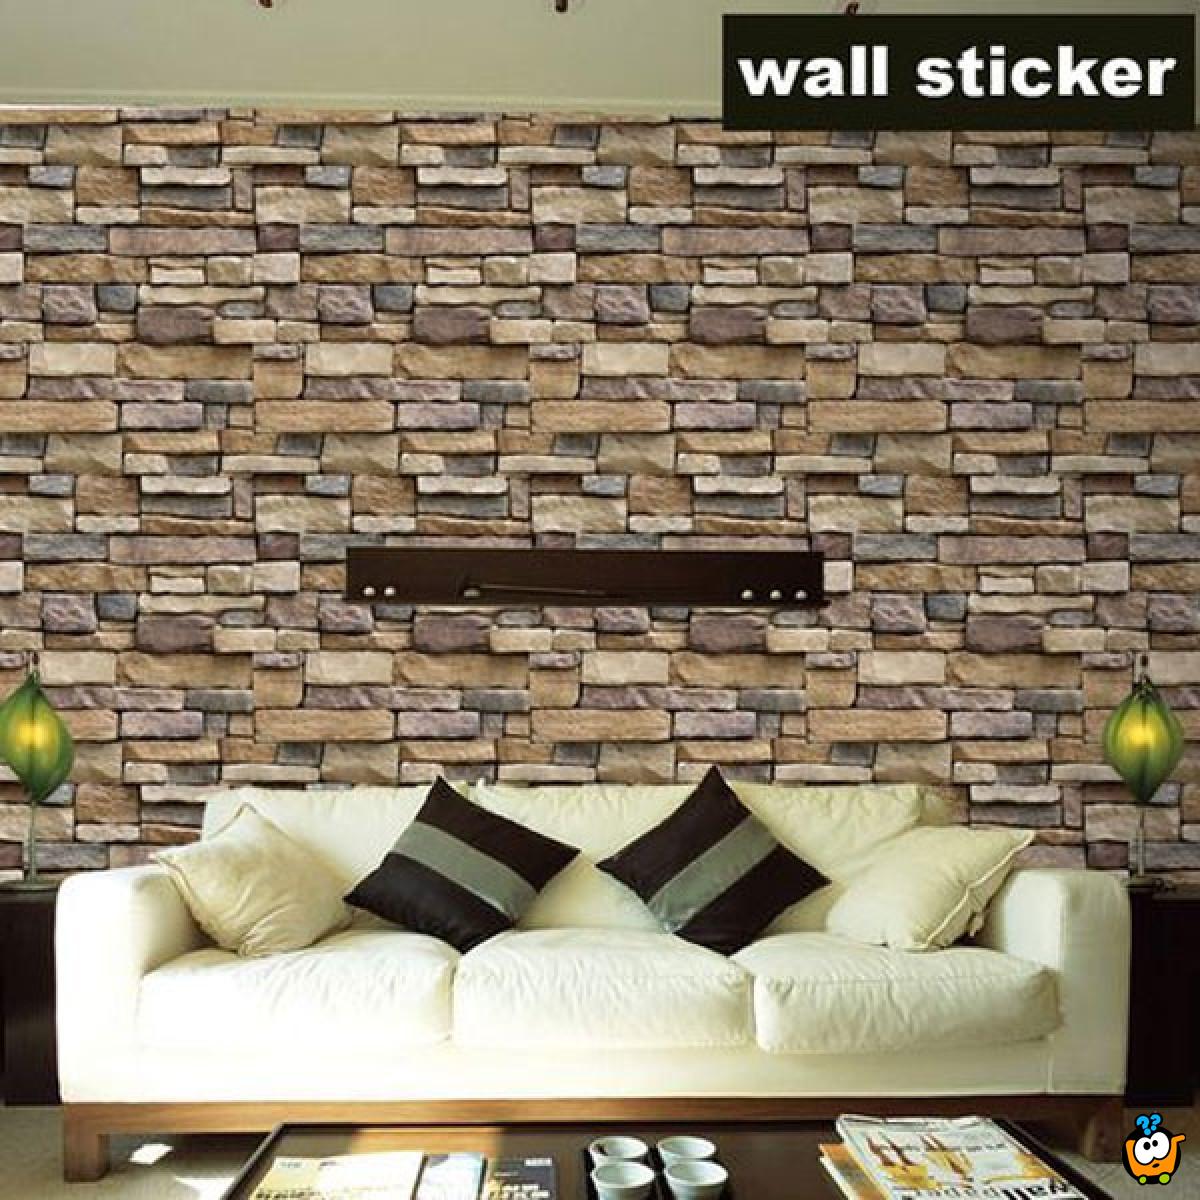 3D Wall sticker - Dekorativni stikeri za zid 30x50 cm